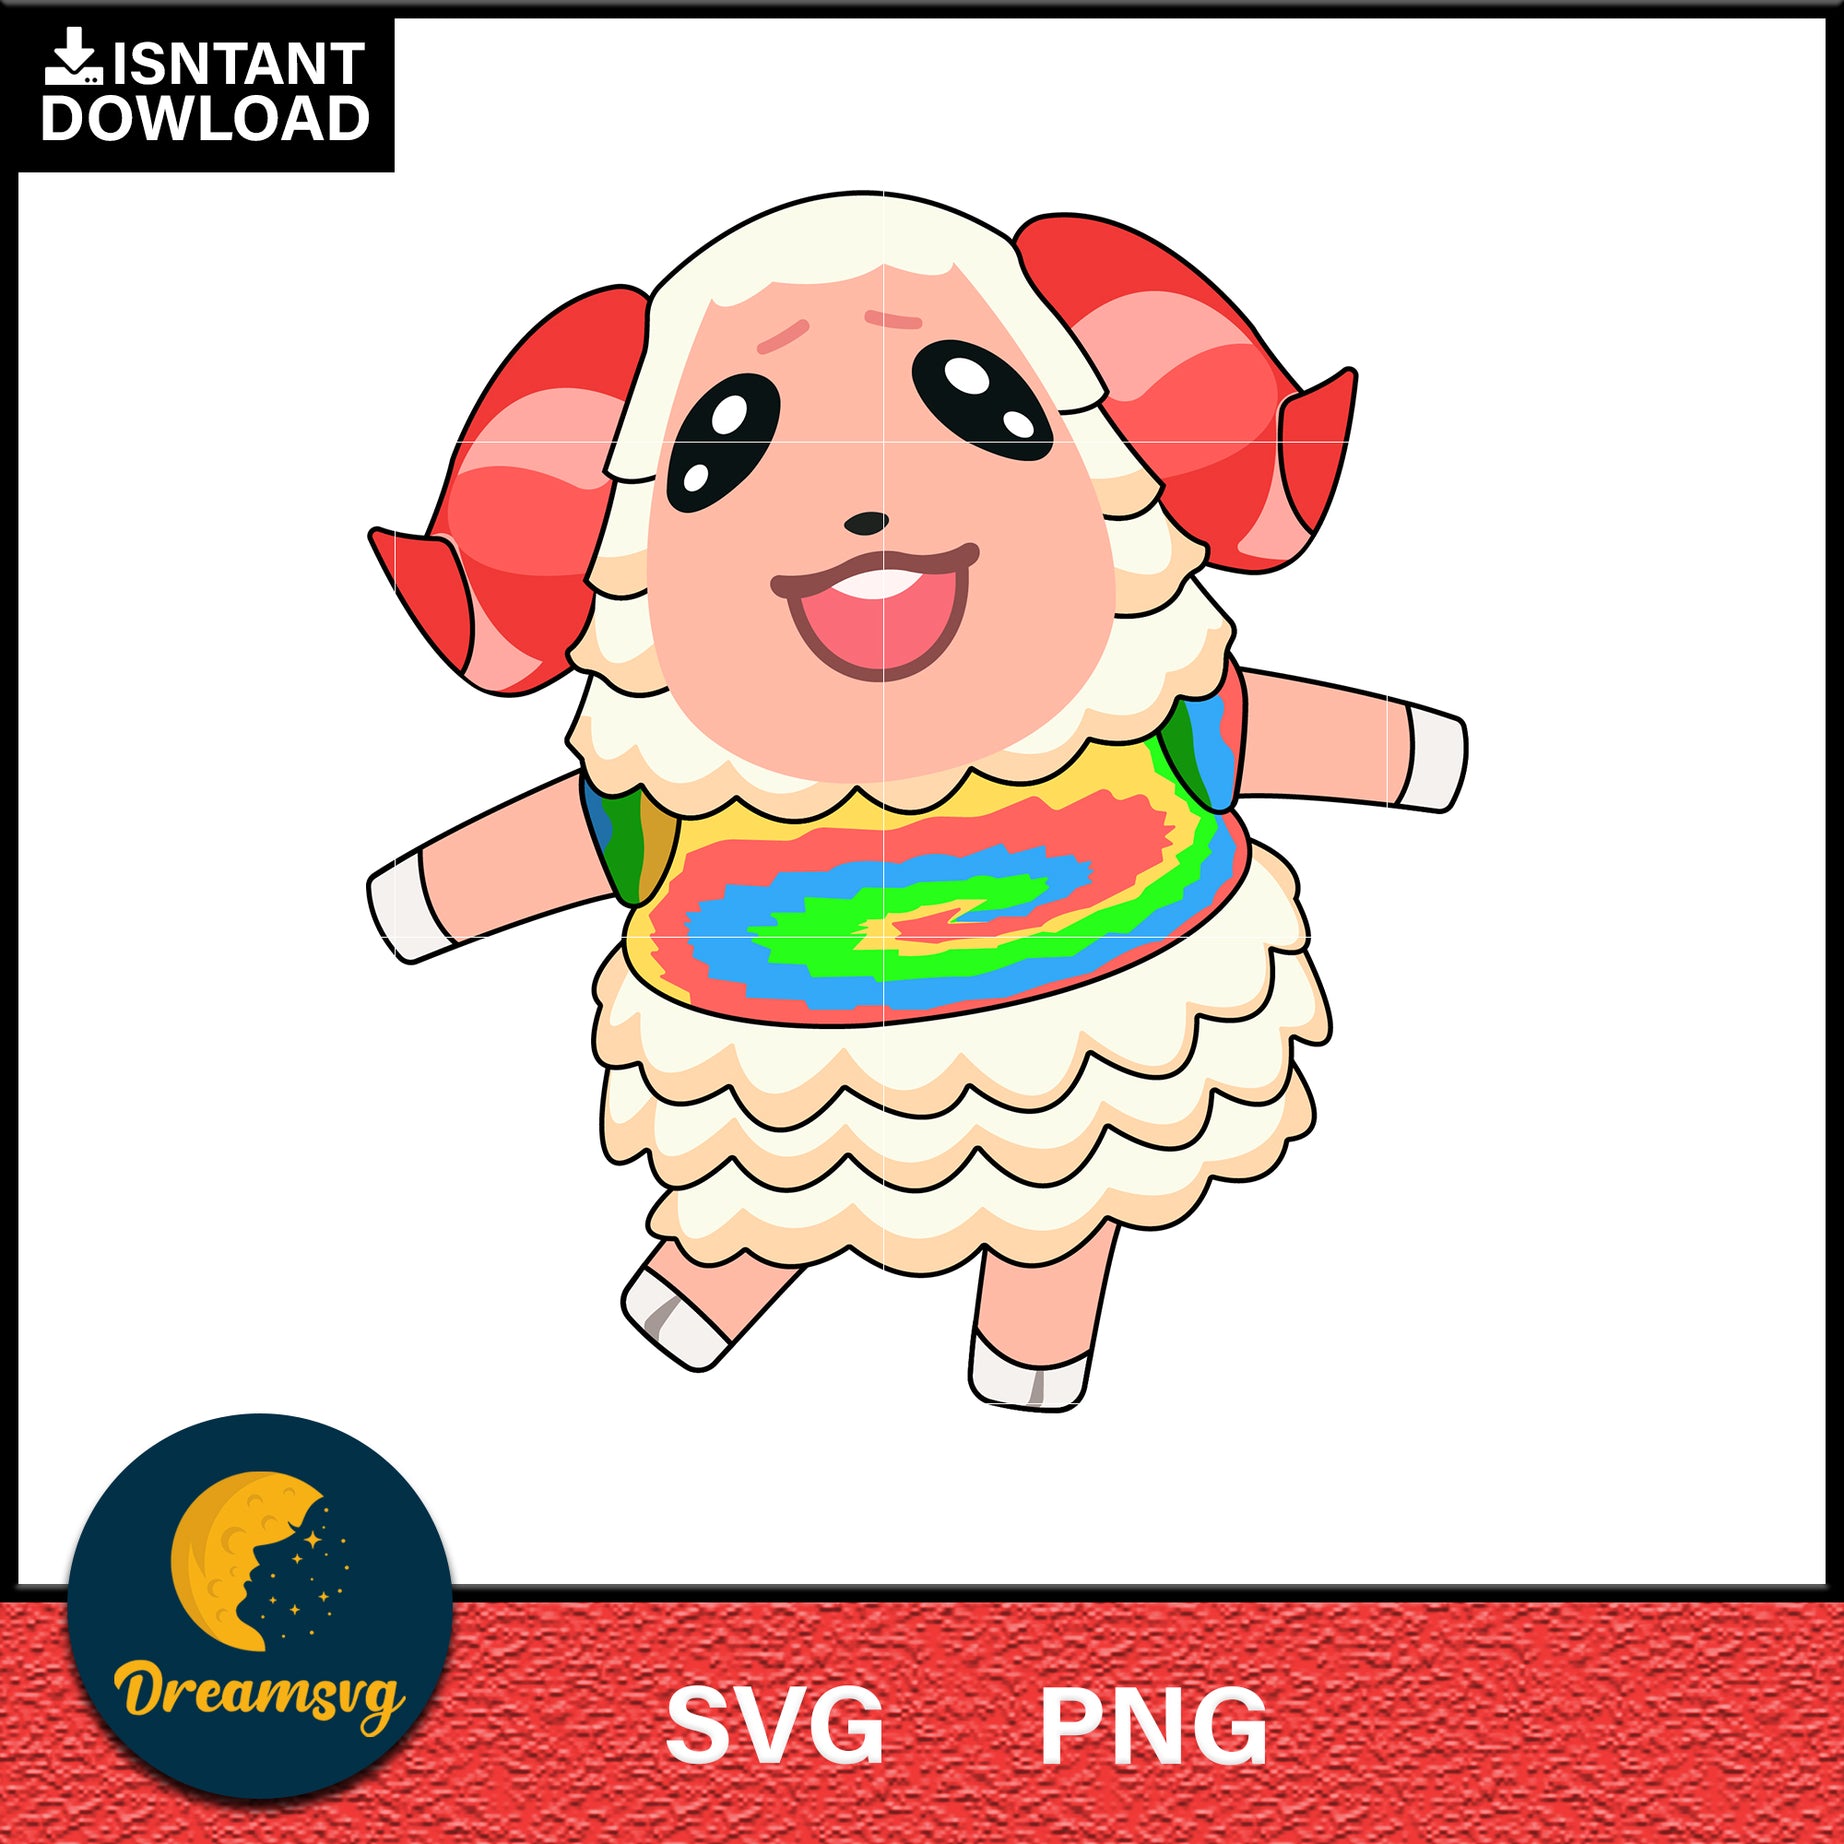 Dom Animal Crossing Svg, Animal Crossing Svg, Animal Crossing Png, Cartoon svg, svg, png digital file